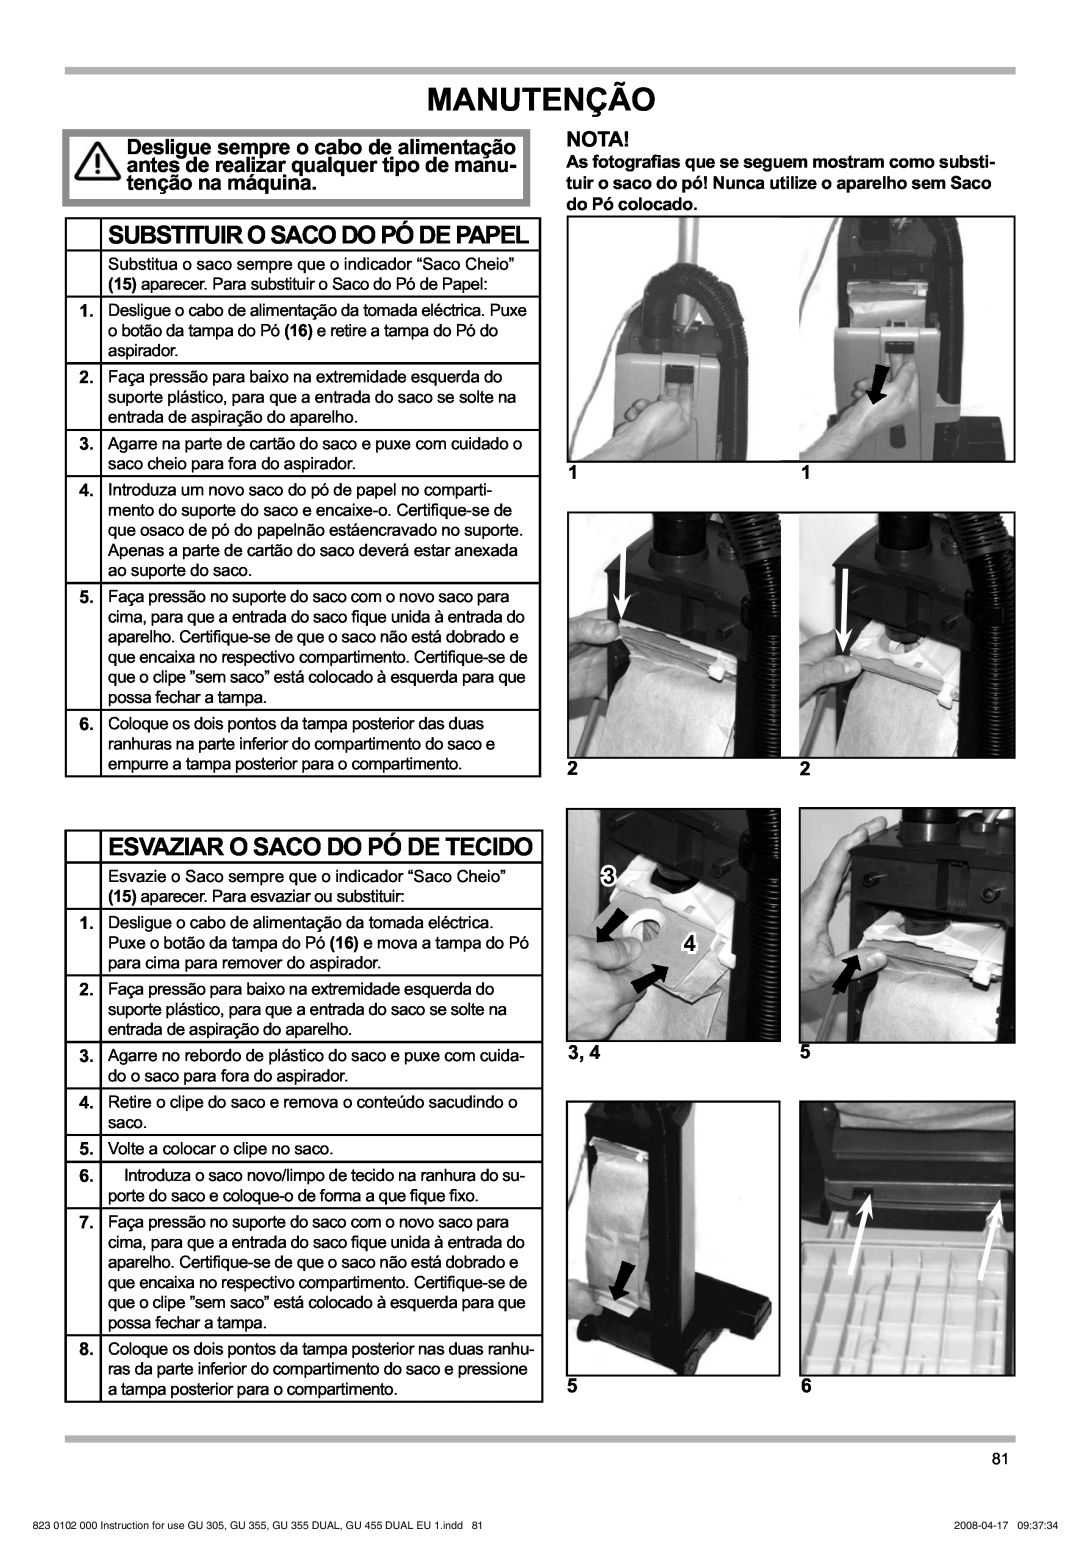 Nilfisk-Advance America GU 305 manual Manutenção, Substituir O Saco Do Pó De Papel, Esvaziar O Saco Do Pó De Tecido, 11 22 